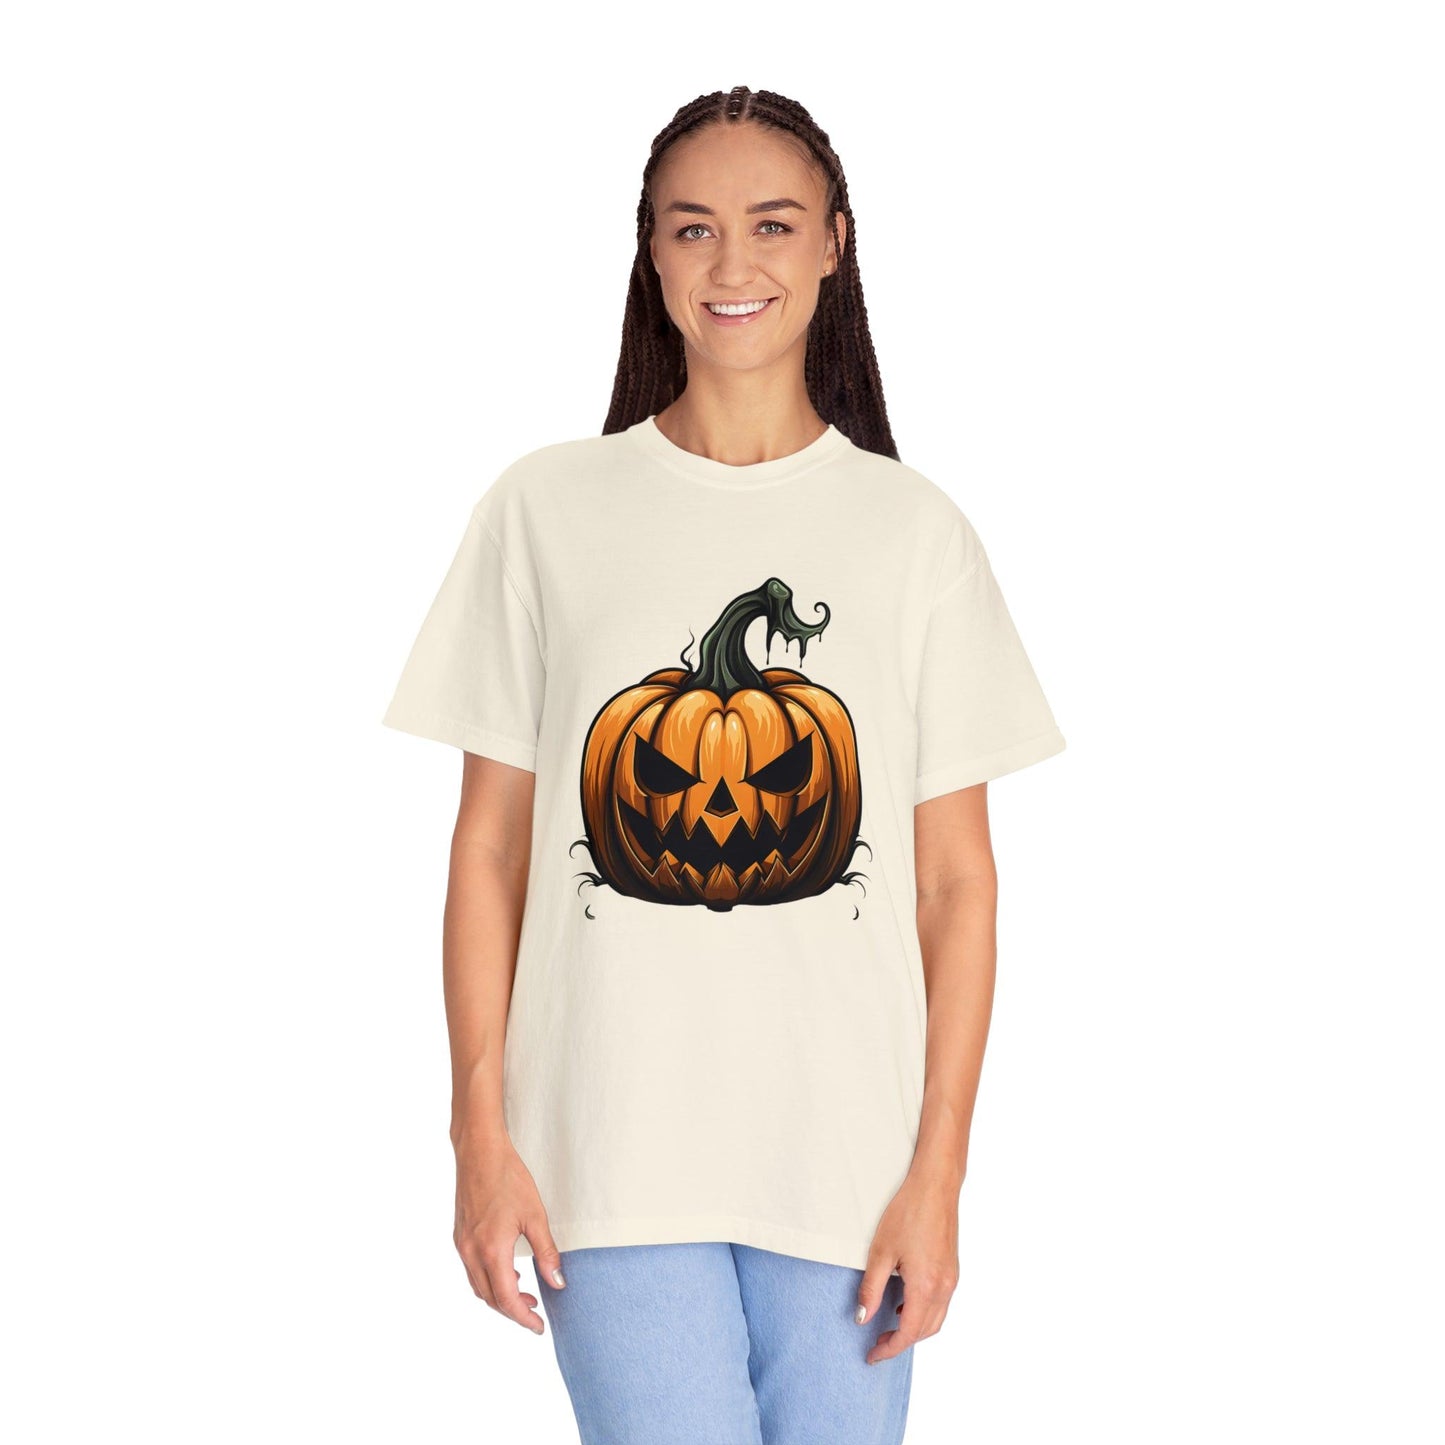 Scary Pumpkin Shirt Fall Halloween Shirt Halloween Costume Pumpkin T Shirt - Pumpkin Tee fall tshirt Fall Shirt Halloween Gift Fall Top